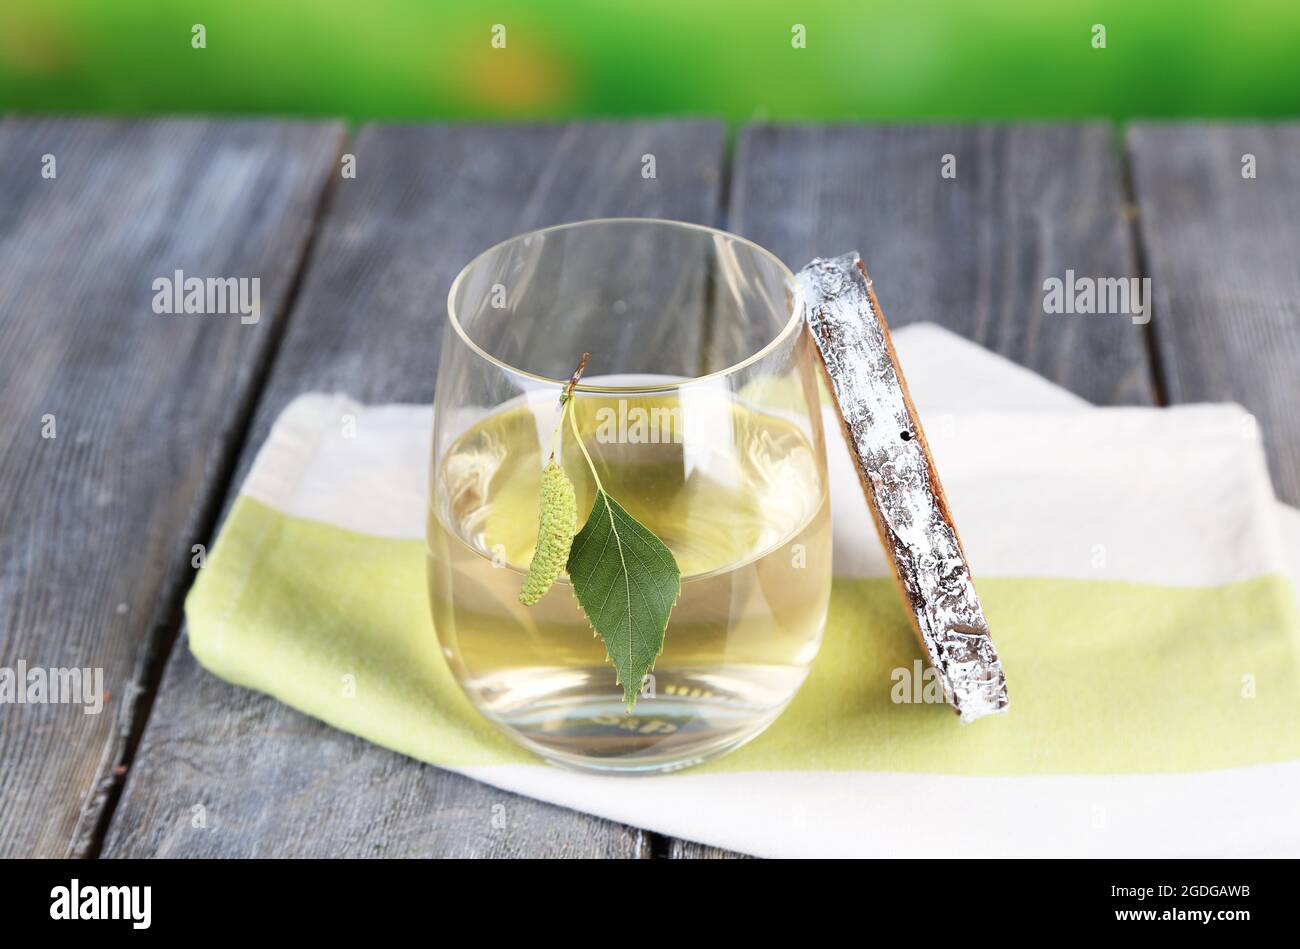 Glas frischen Birch sap auf einem Holztisch auf Natur Hintergrund  Stockfotografie - Alamy